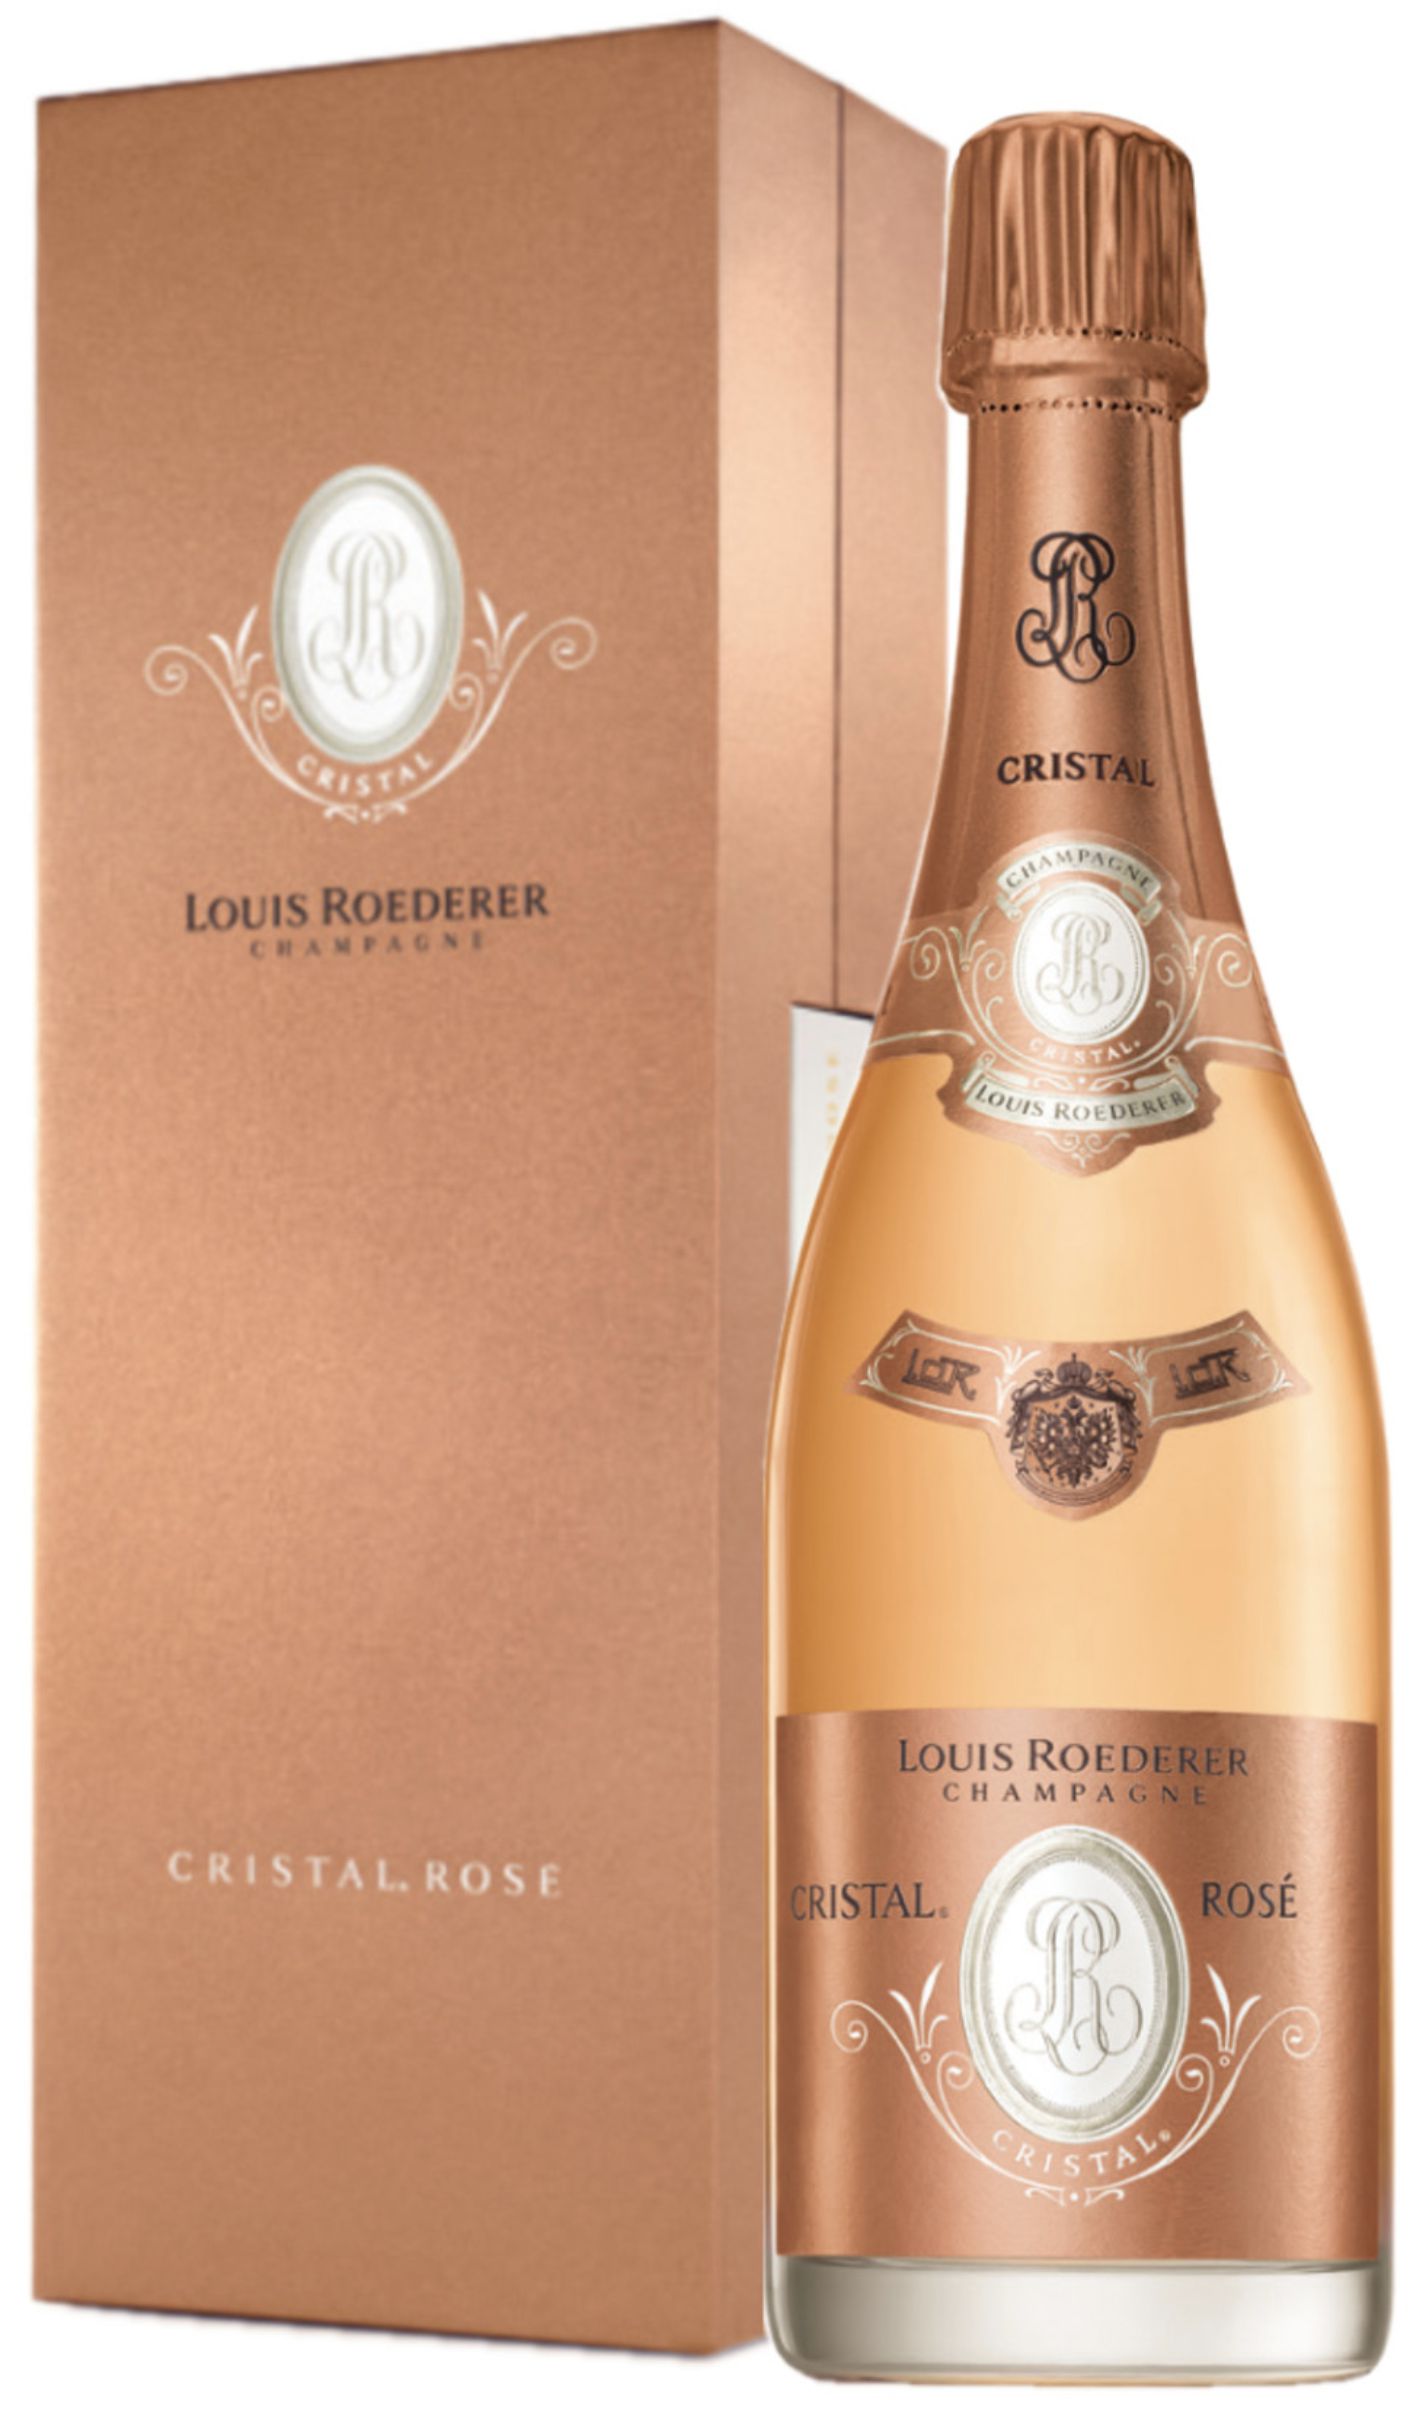 Шампанское Луи Родерер "Кристаль" Розе 2008, розовое брют, 0.75 л